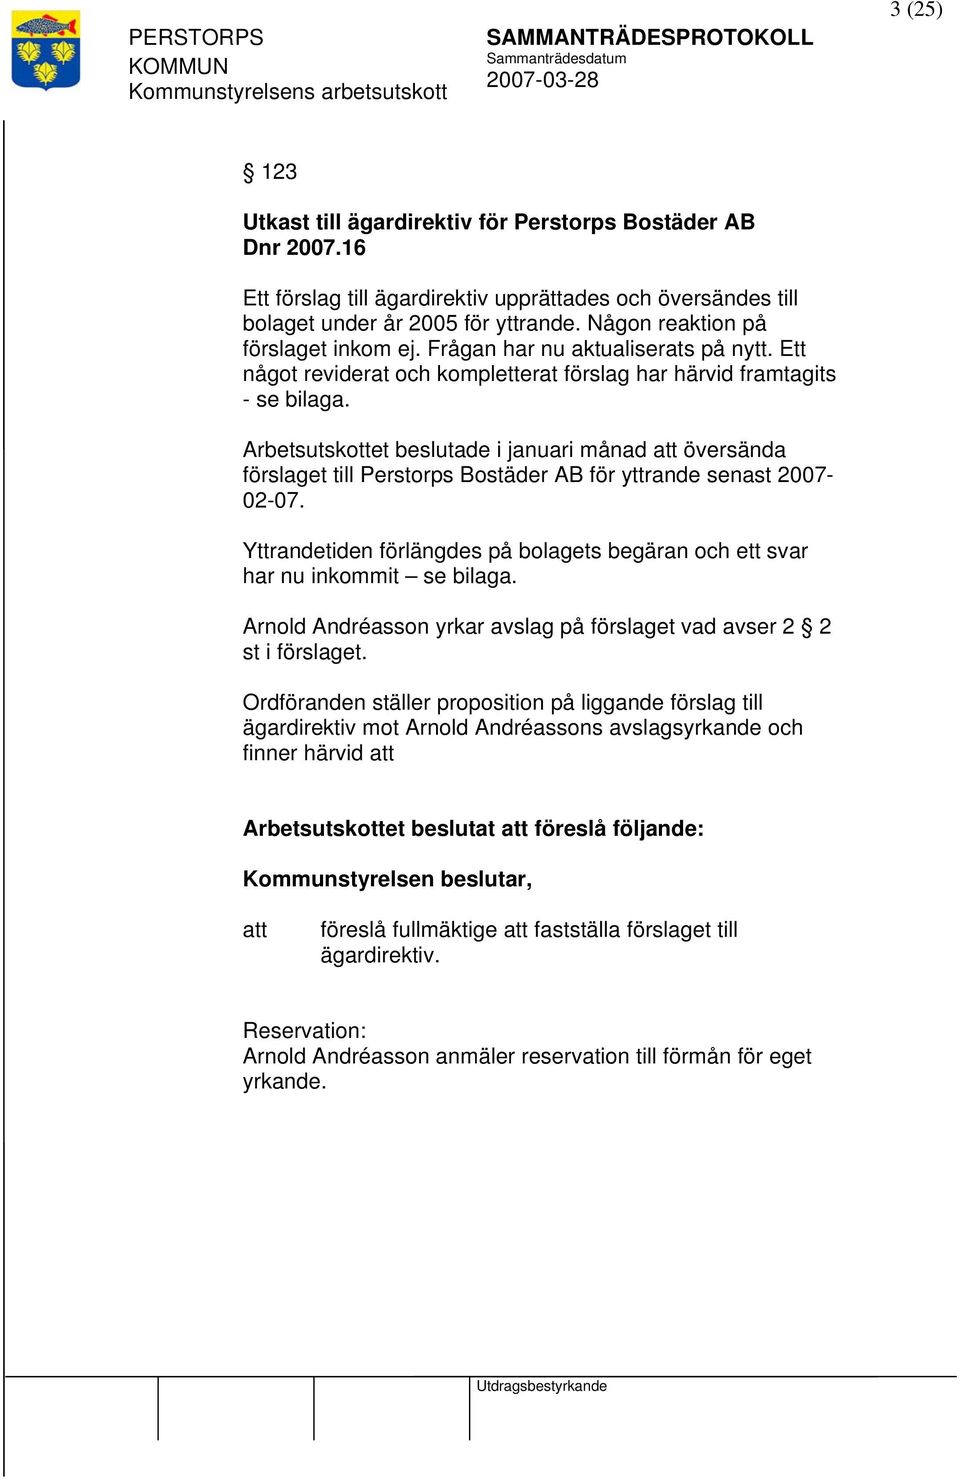 Arbetsutskottet beslutade i januari månad översända förslaget till Perstorps Bostäder AB för yttrande senast 2007-02-07.